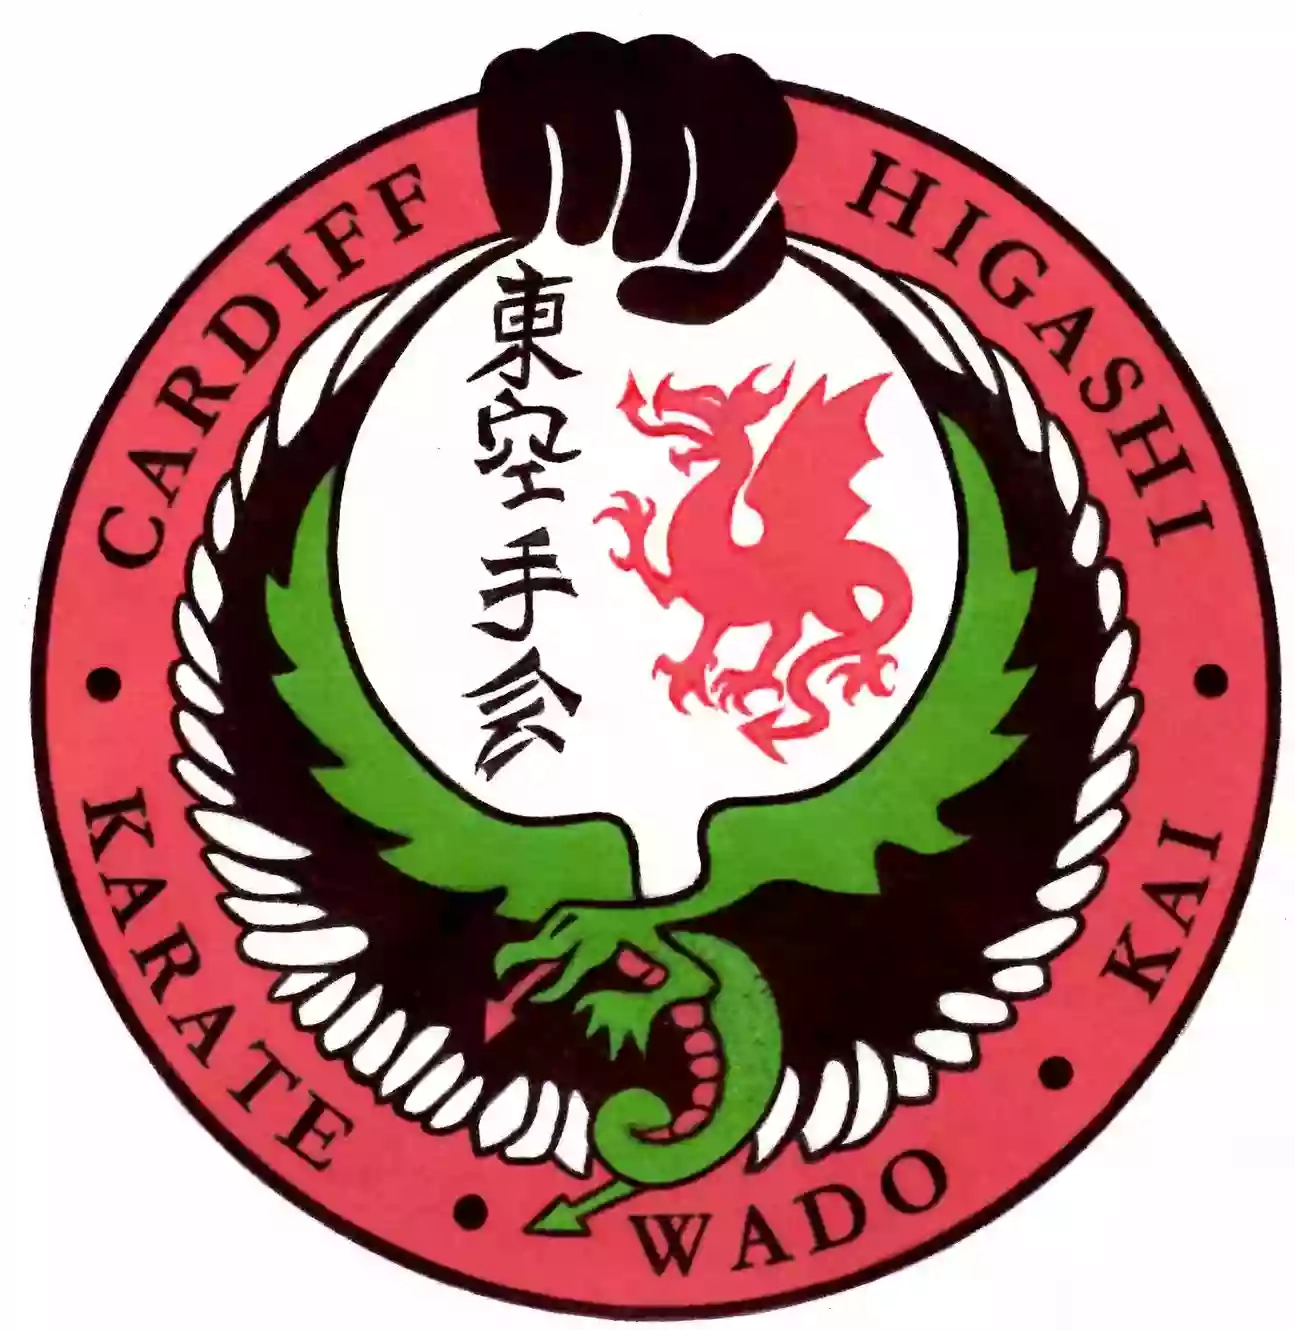 Cardiff Higashi Karate Club